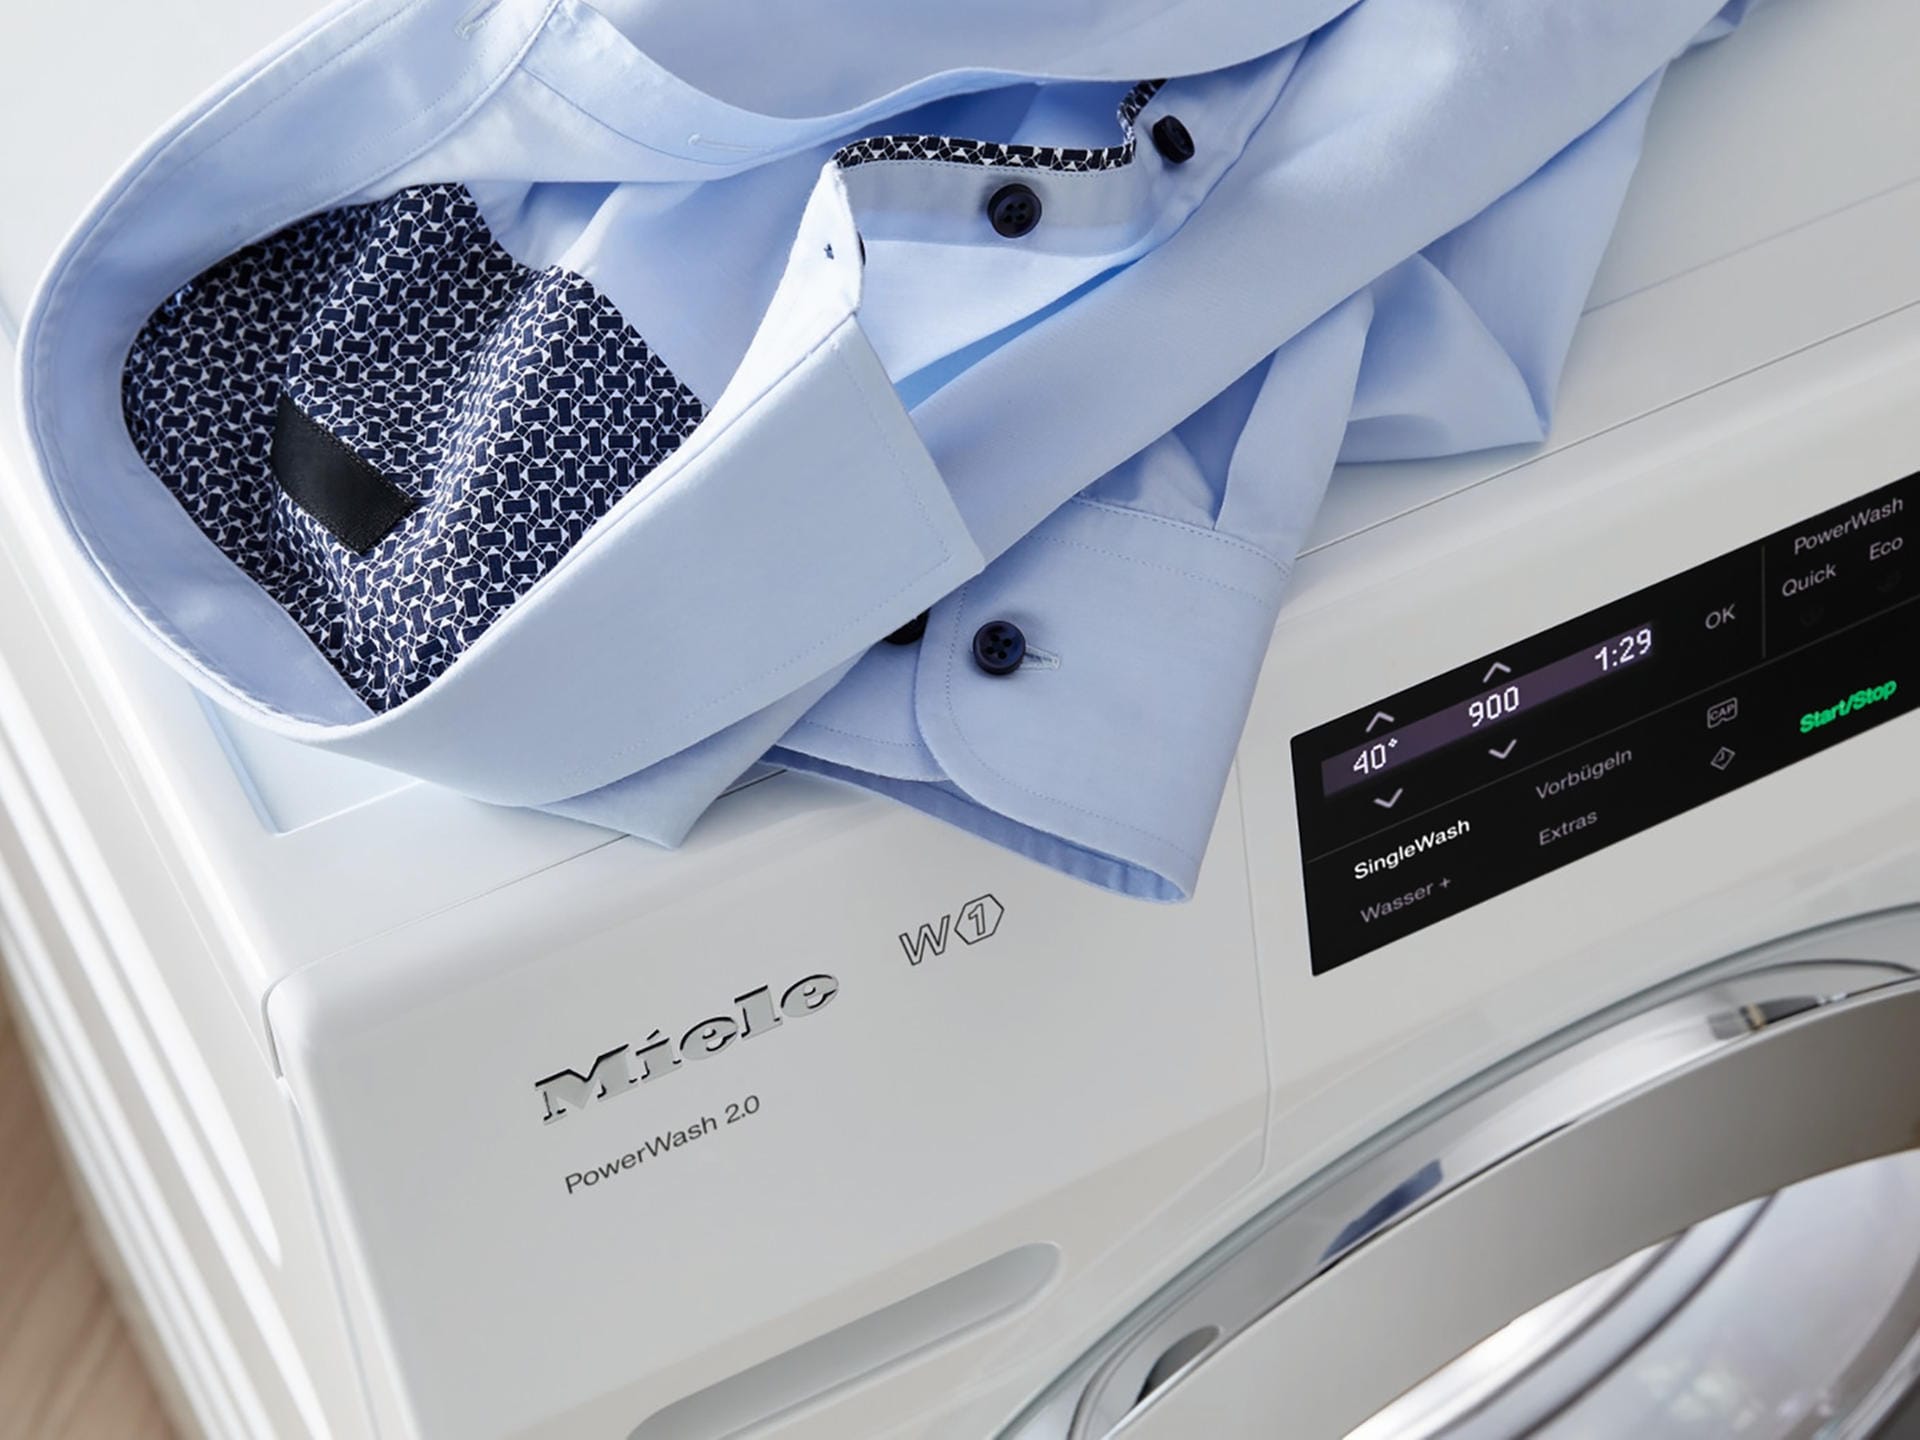 Miele bietet für Waschmaschinen nun eine Funktion an, bei der Wasser- und Energieverbrauch sowie die Programmlaufzeit auf kleine Mengen in der Trommel angepasst werden: Auch das entspricht der Idee, dass die Geräte flexibler werden sollen.